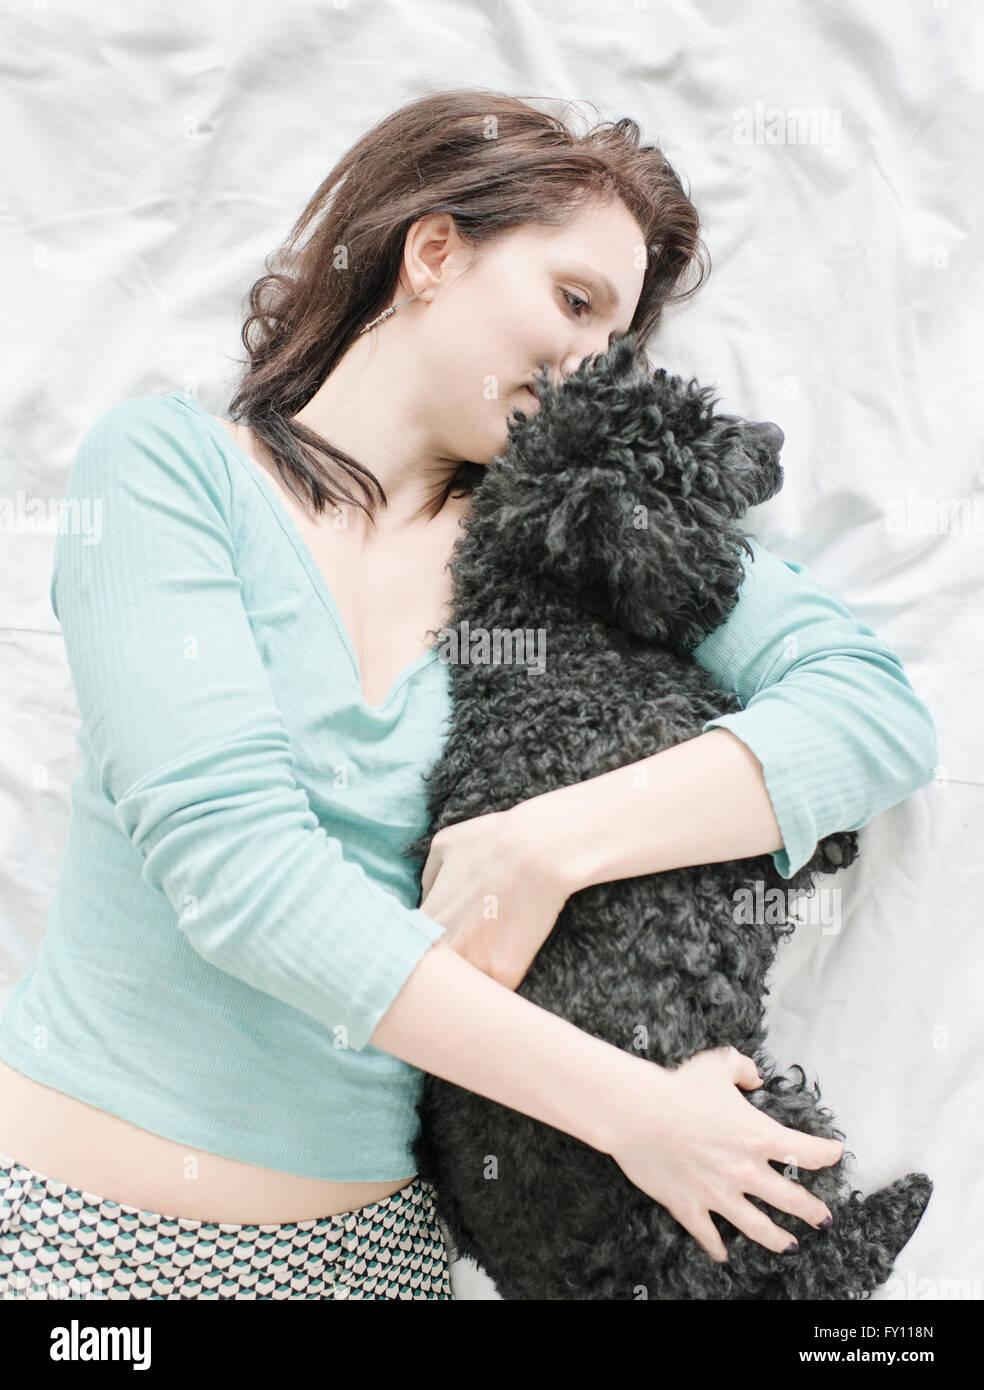 Frau liegend im Bett umarmt schwarzen Pudel. Lifestyle-Bild zeigt Zuneigung und die Bindung zwischen Hund und Mensch. Stockfoto